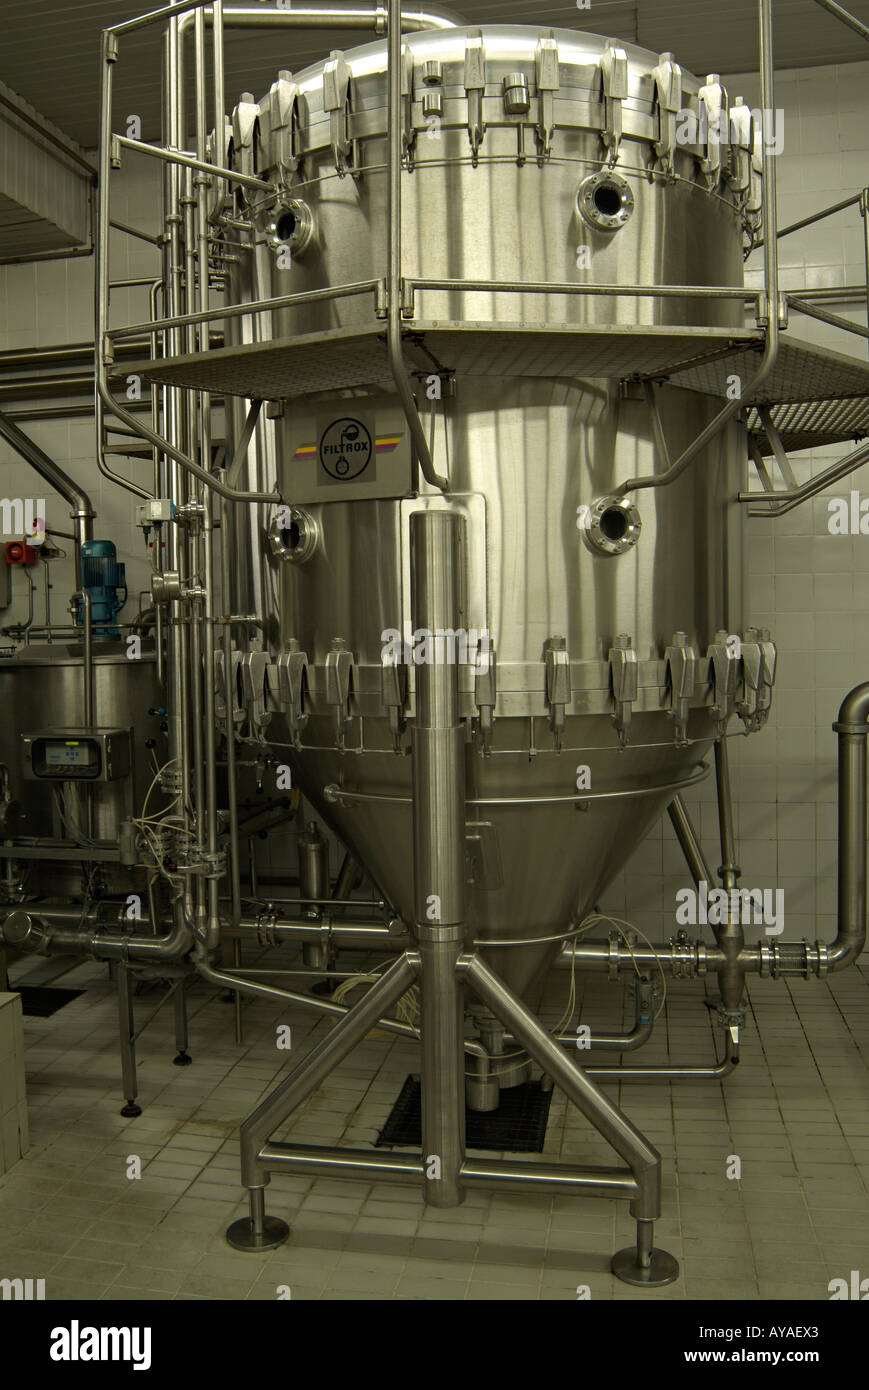 Usine de filtration de la brasserie de la bière fermentée de filtrage avant d'être embouteillée ou Casked pour la vente au détail Banque D'Images